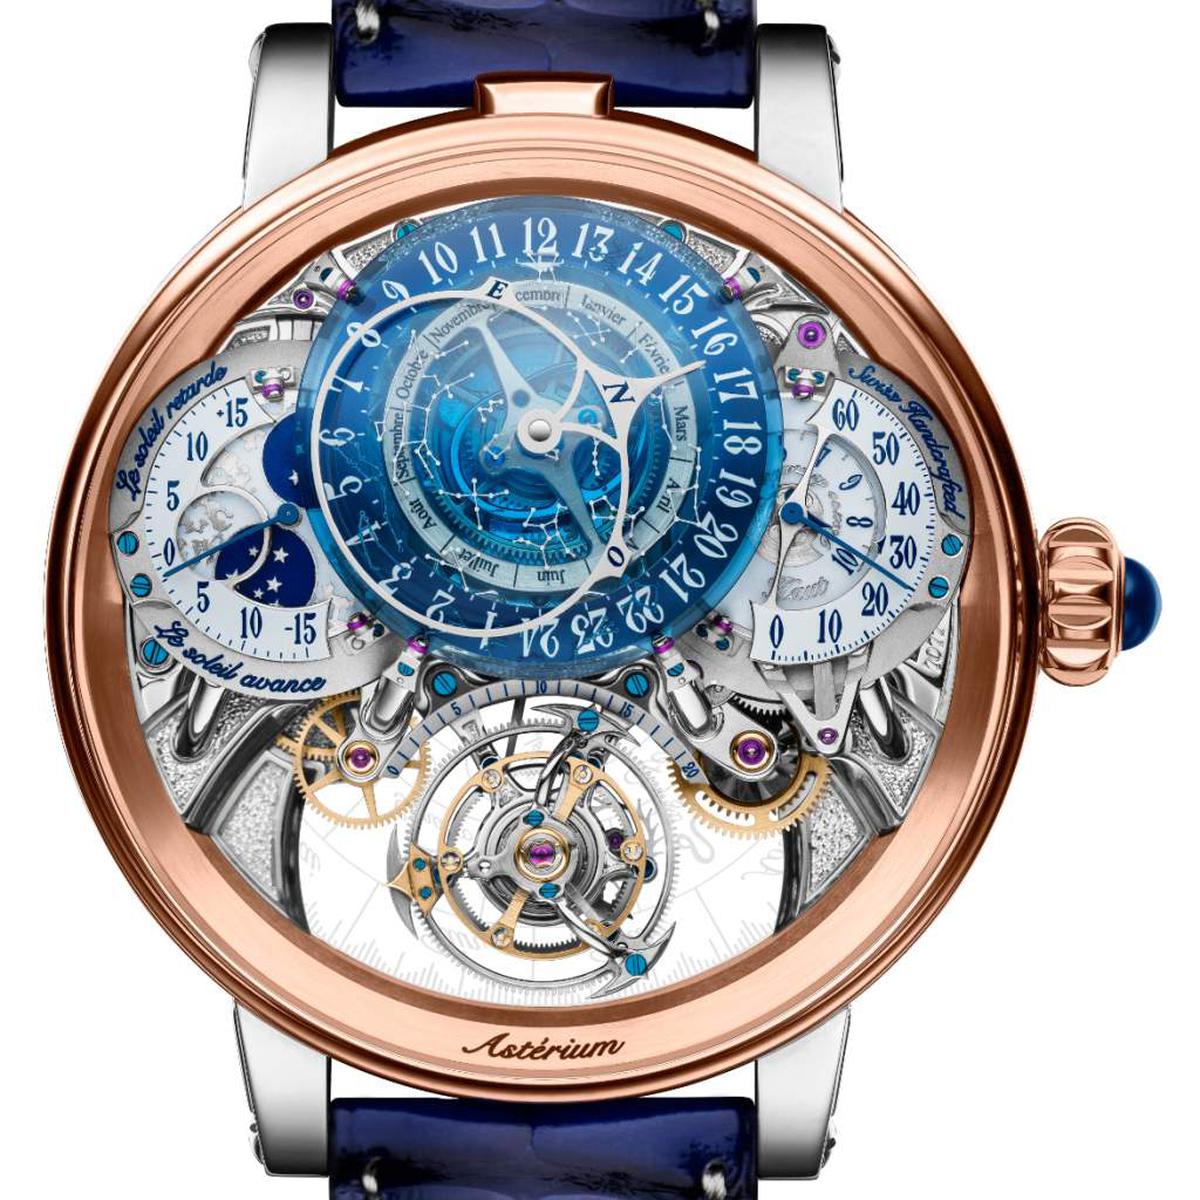 The Bovet Récital 20 Astérium watch